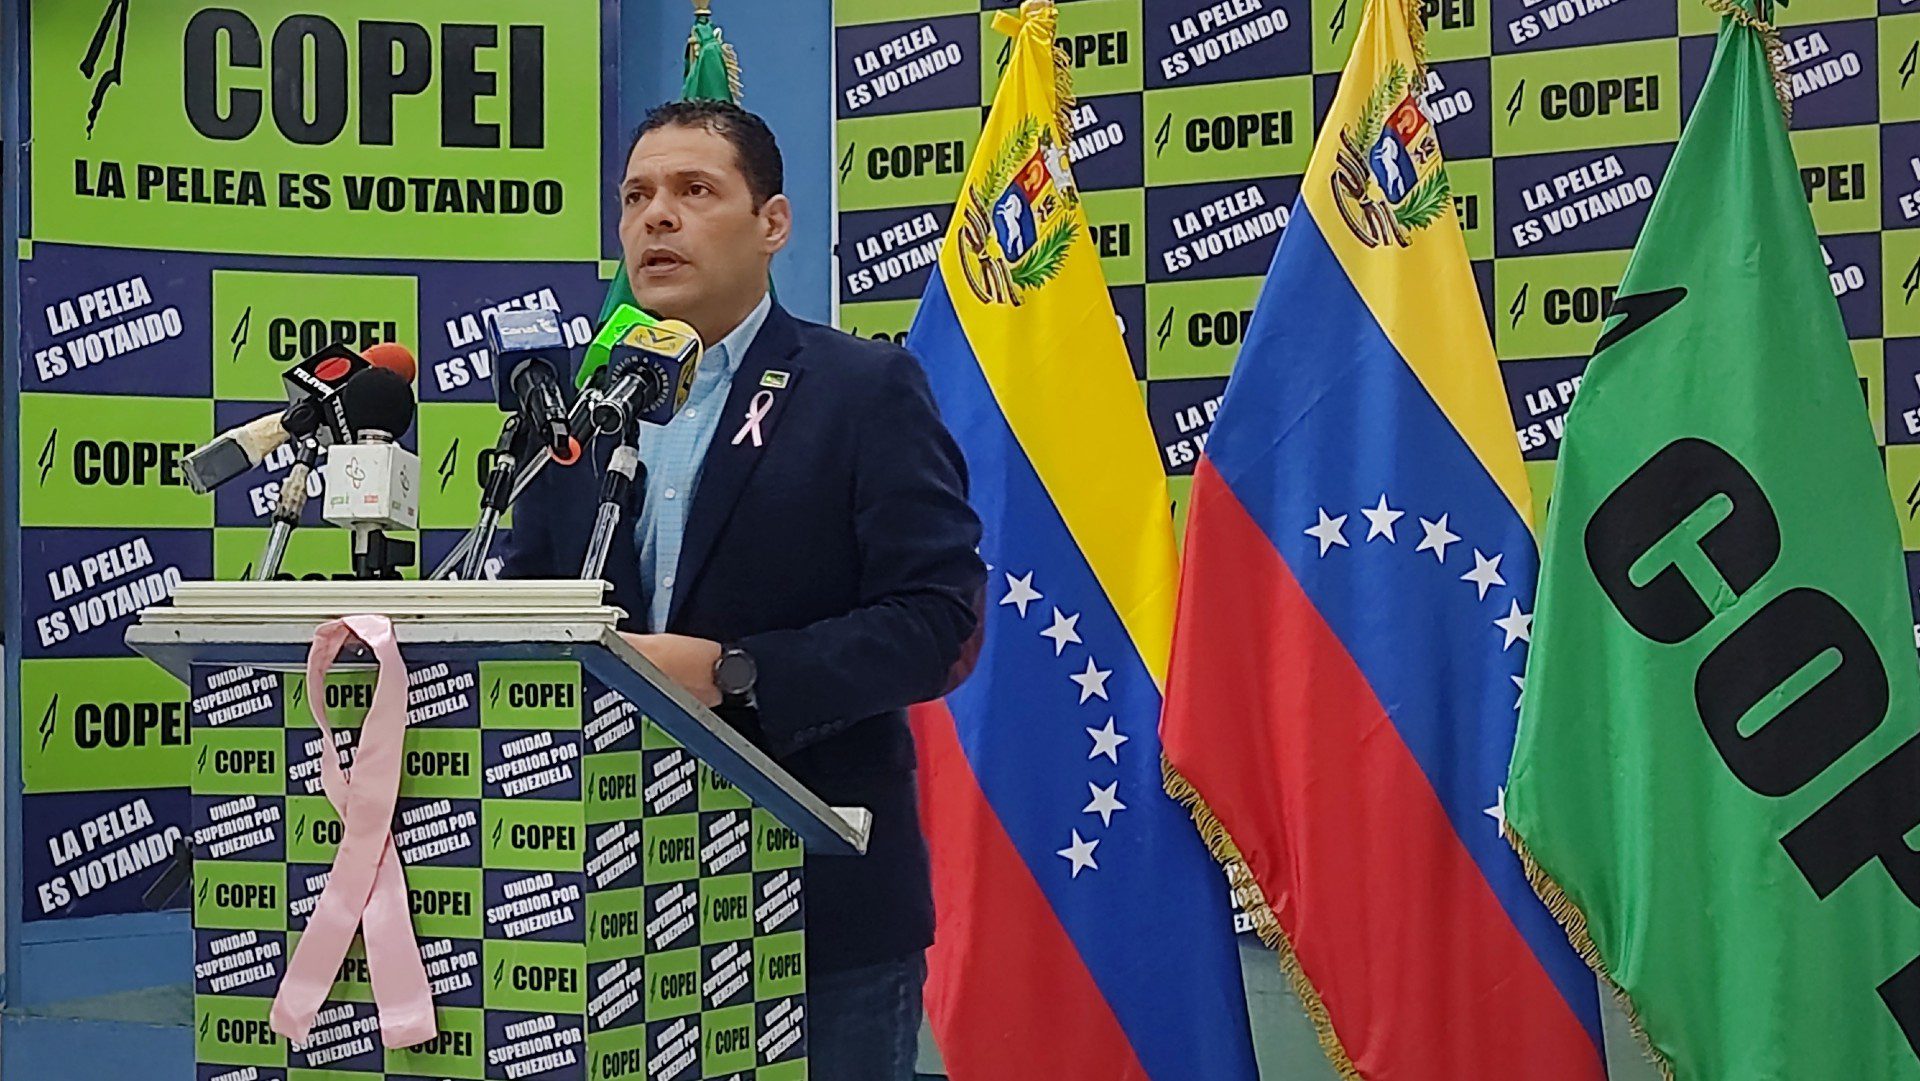 Copei rechazó medida de EEUU contra migrantes venezolanos